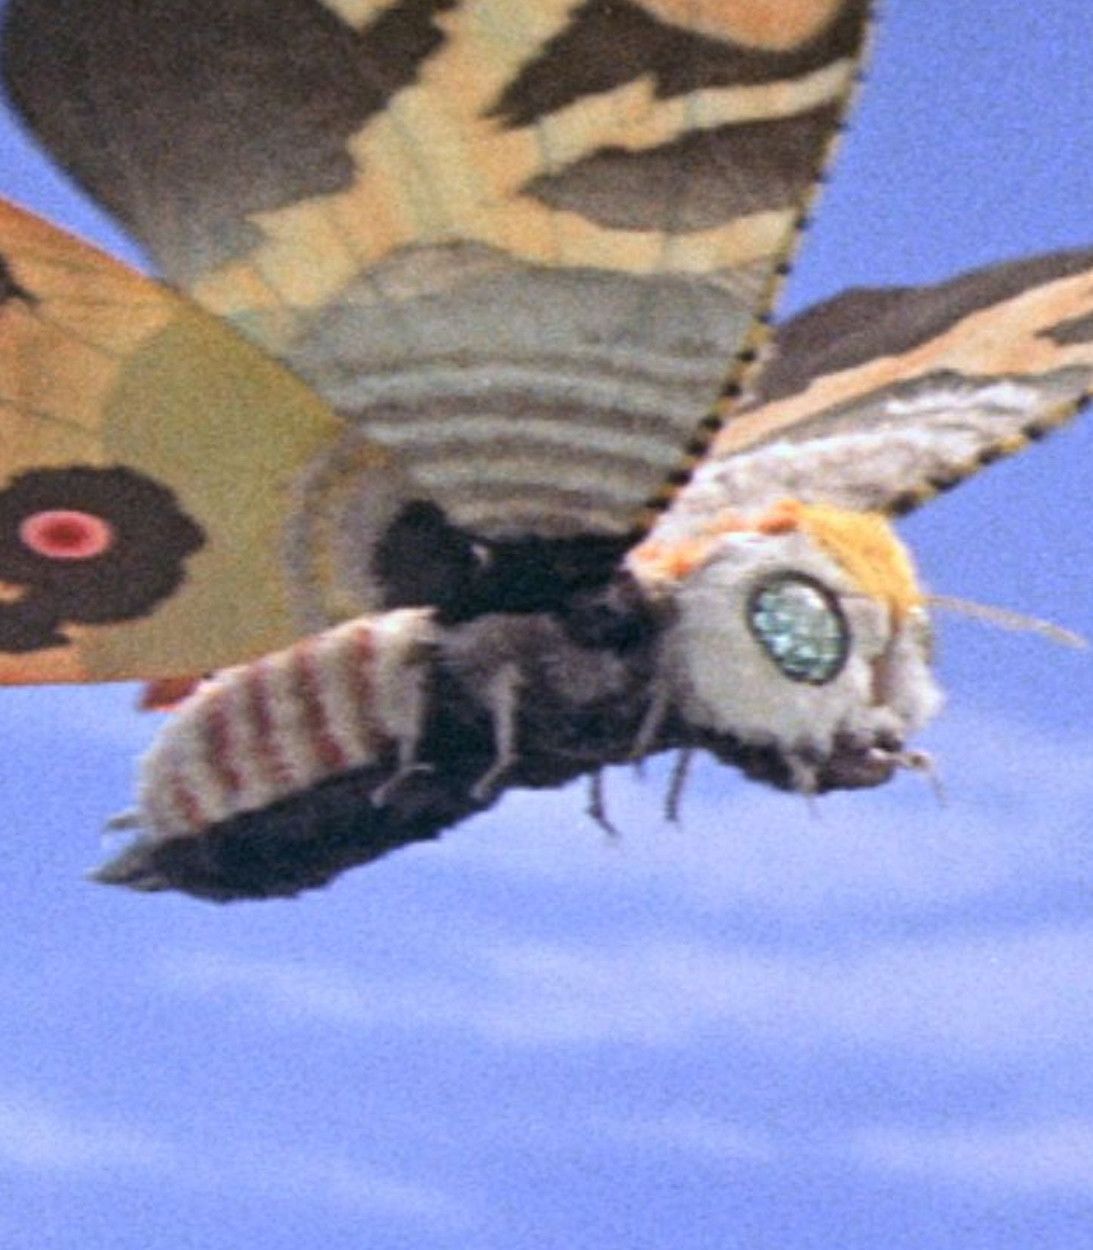 Classic Mothra movie still